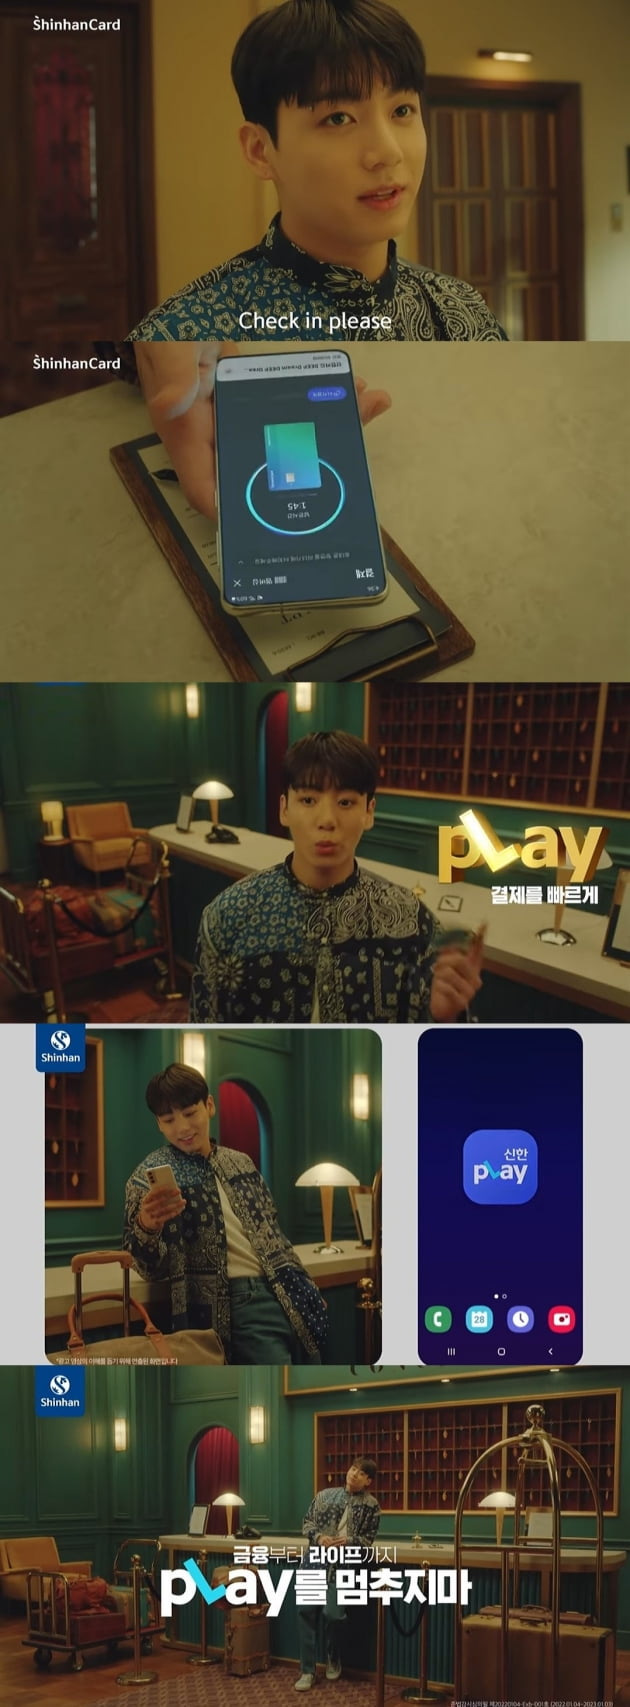 방탄소년단 정국, 카드 없이 신한pLay앱으로 체크인...한계 없는 '광고 장인'